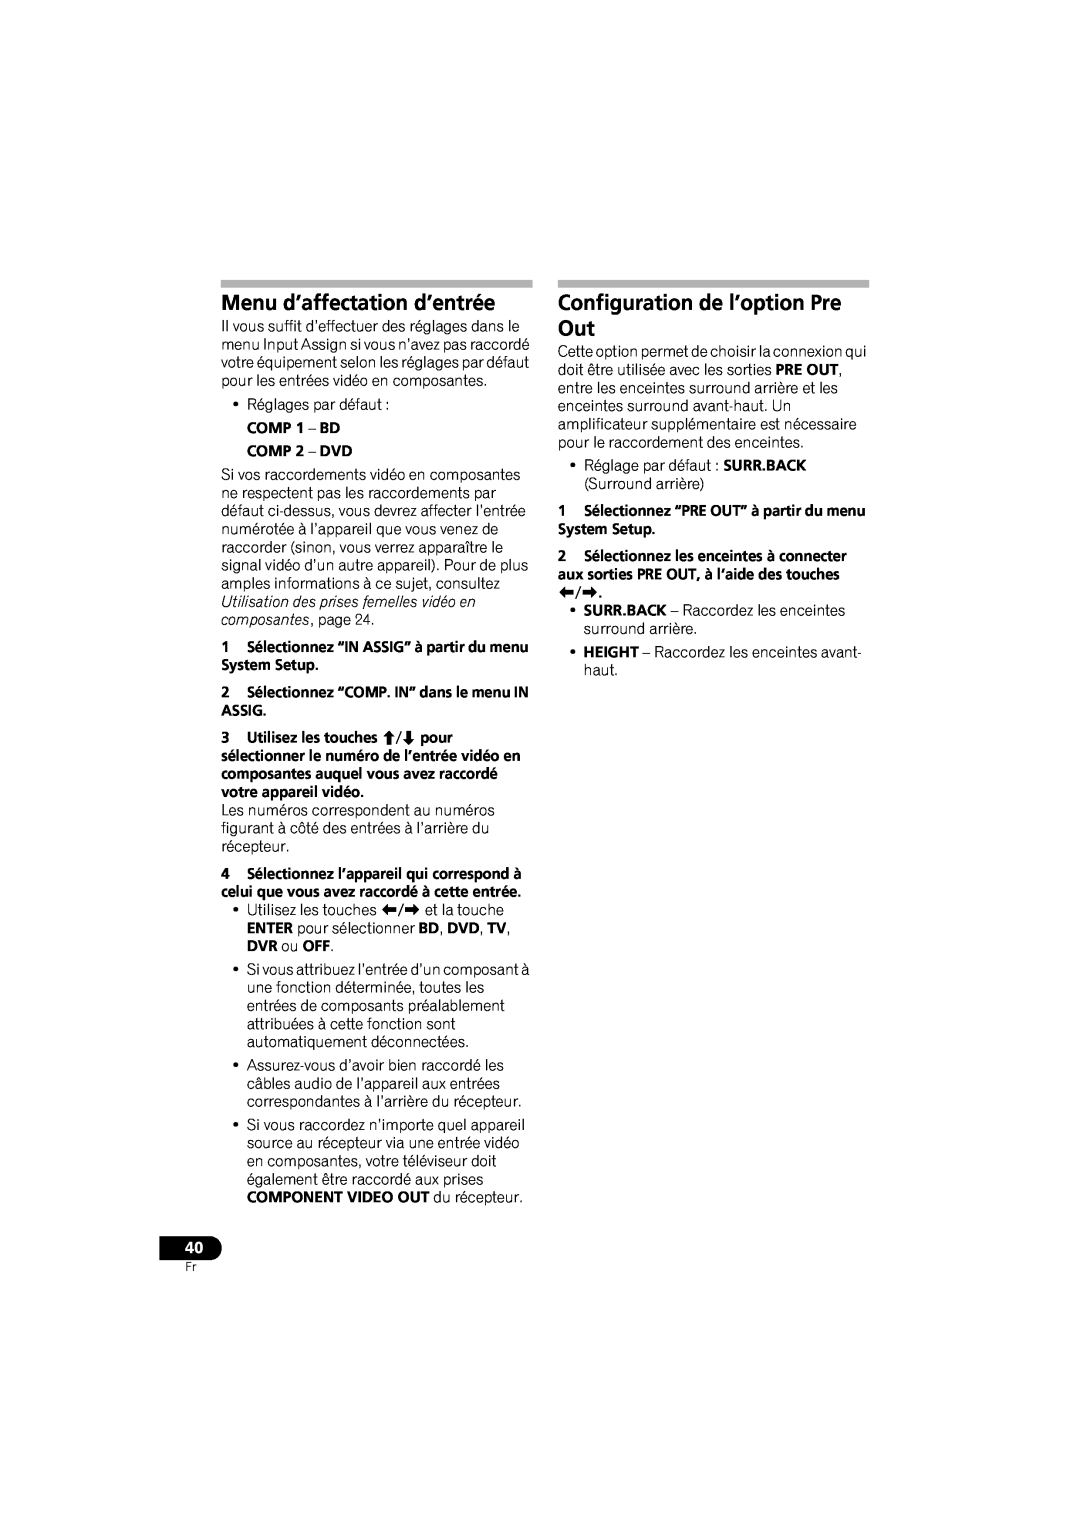 Pioneer VSX-520 manual Menu d’affectation d’entrée, Configuration de l’option Pre Out, COMP 1 – BD COMP 2 – DVD 